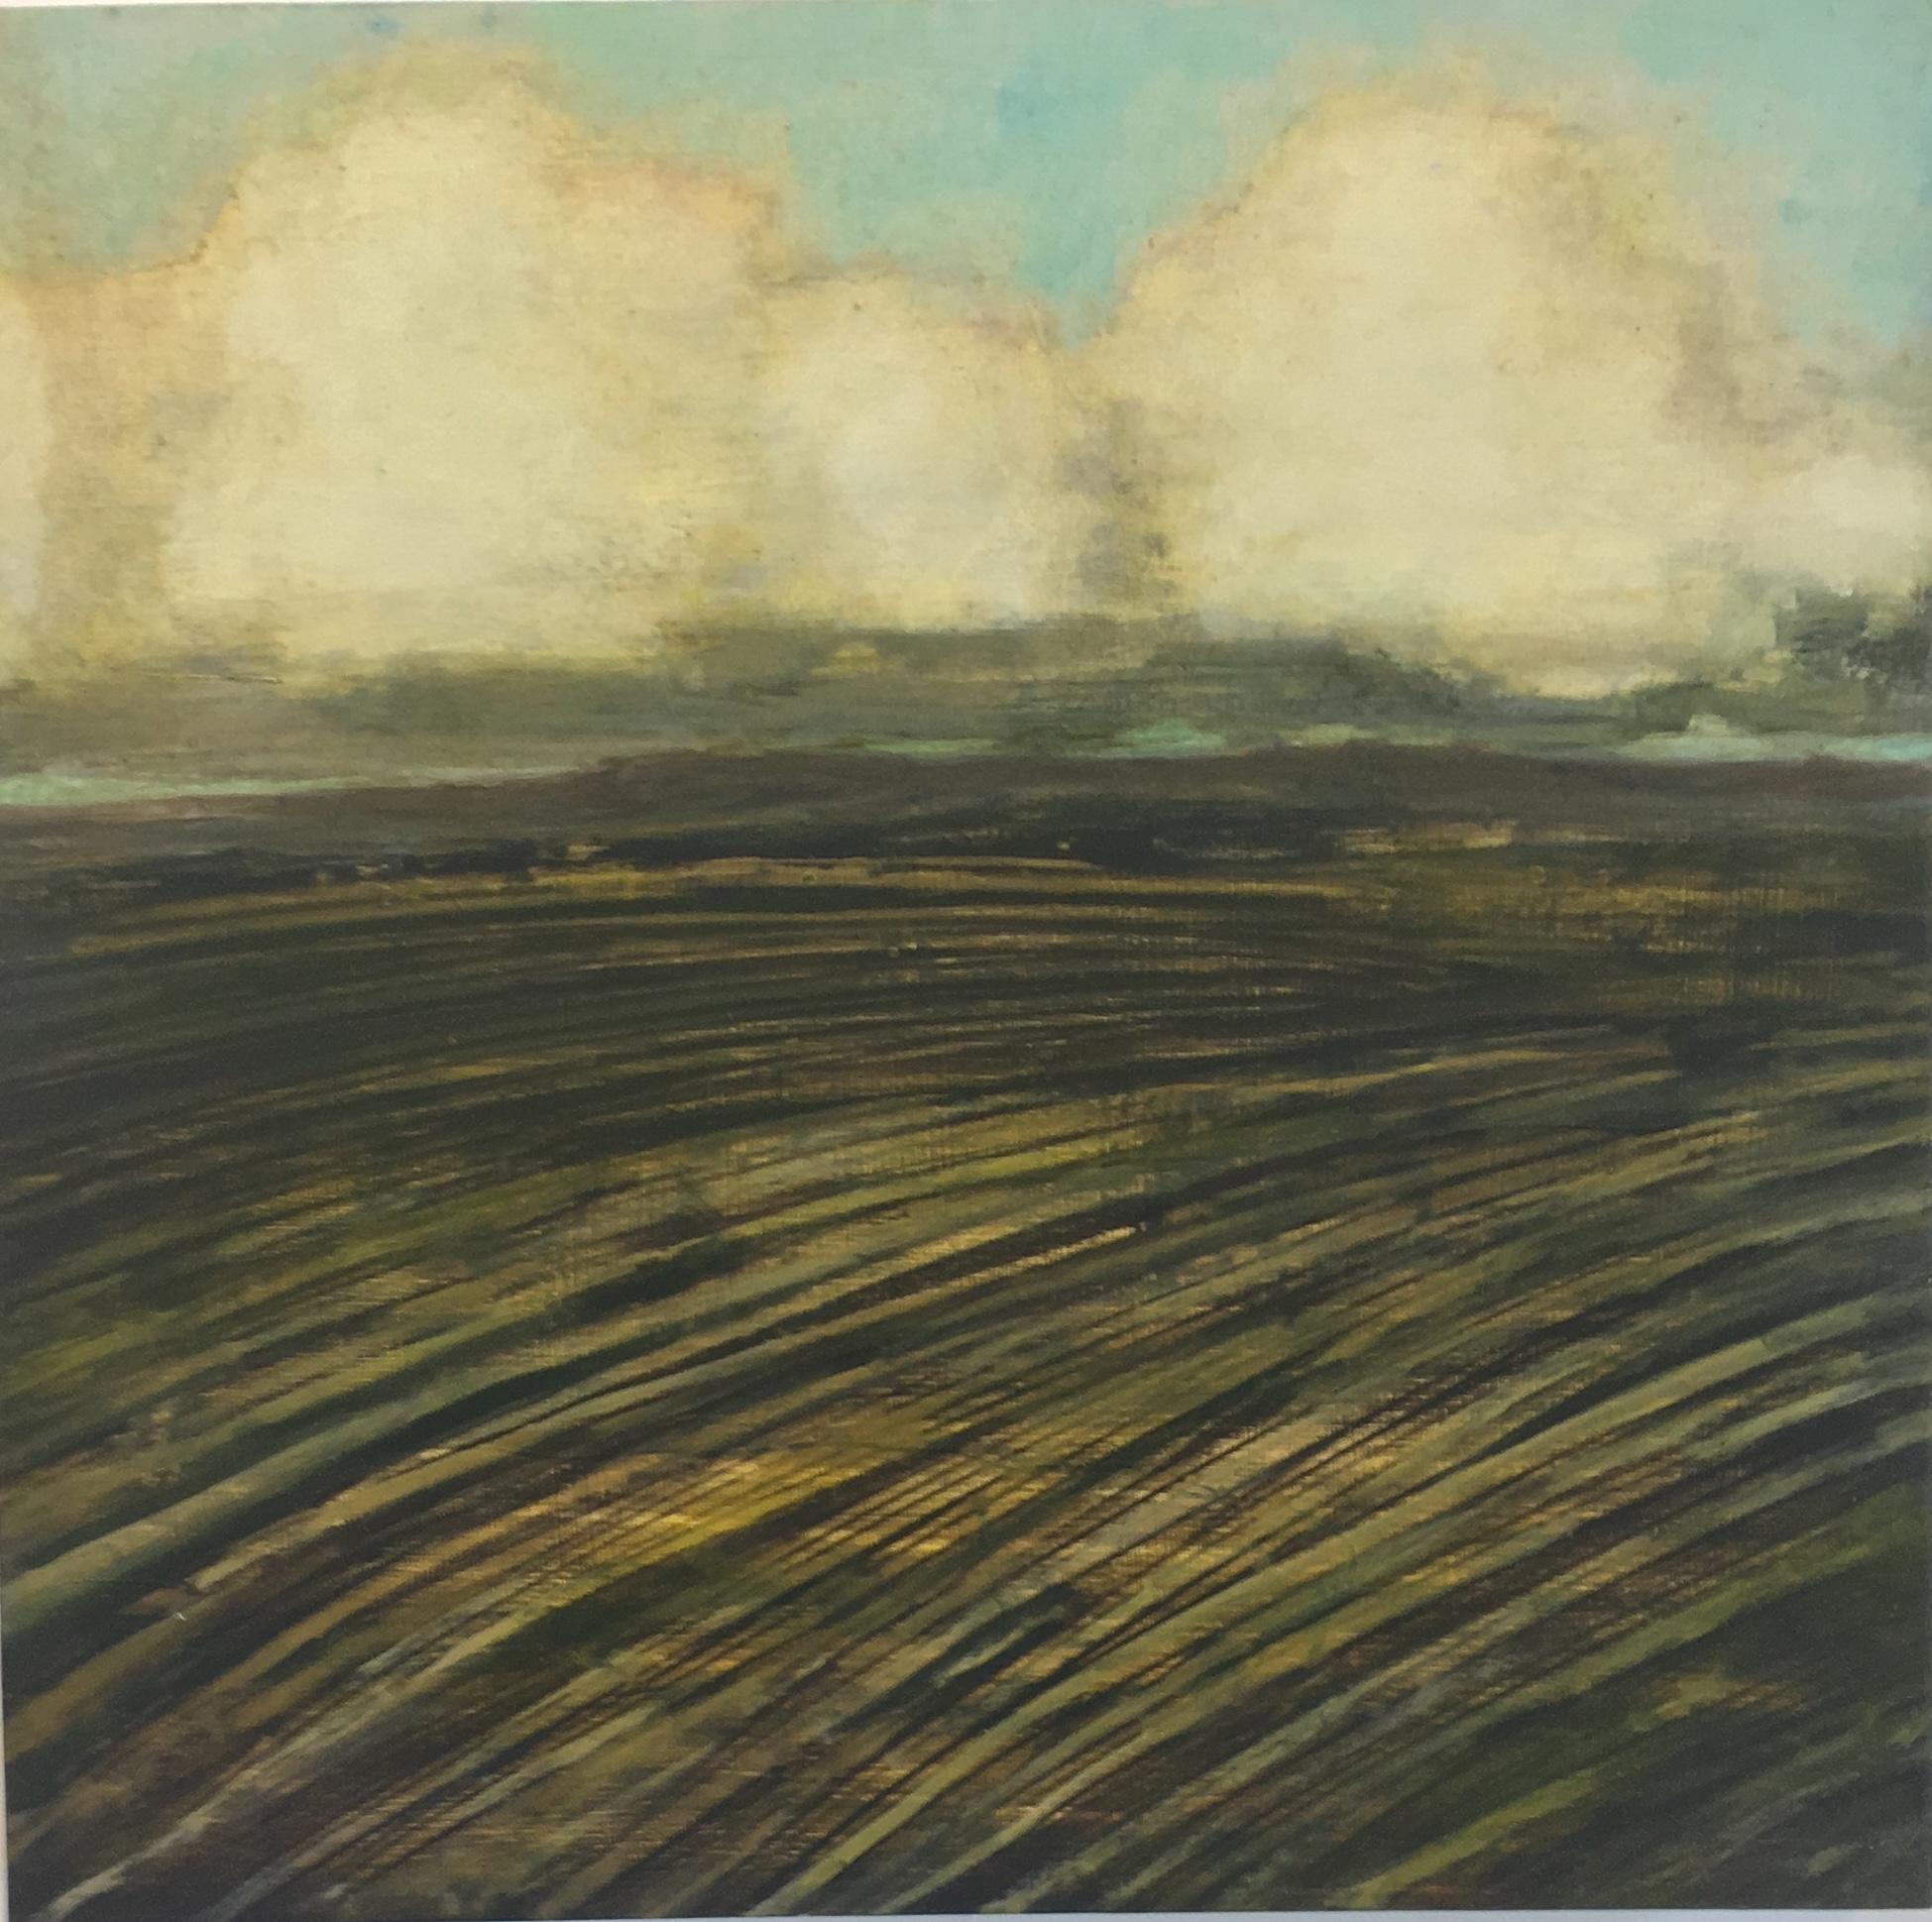 Landscape Painting David Konigsberg - Nouveau champ, peinture de paysage, nuages ivoire, ciel bleu pâle, terrain brun